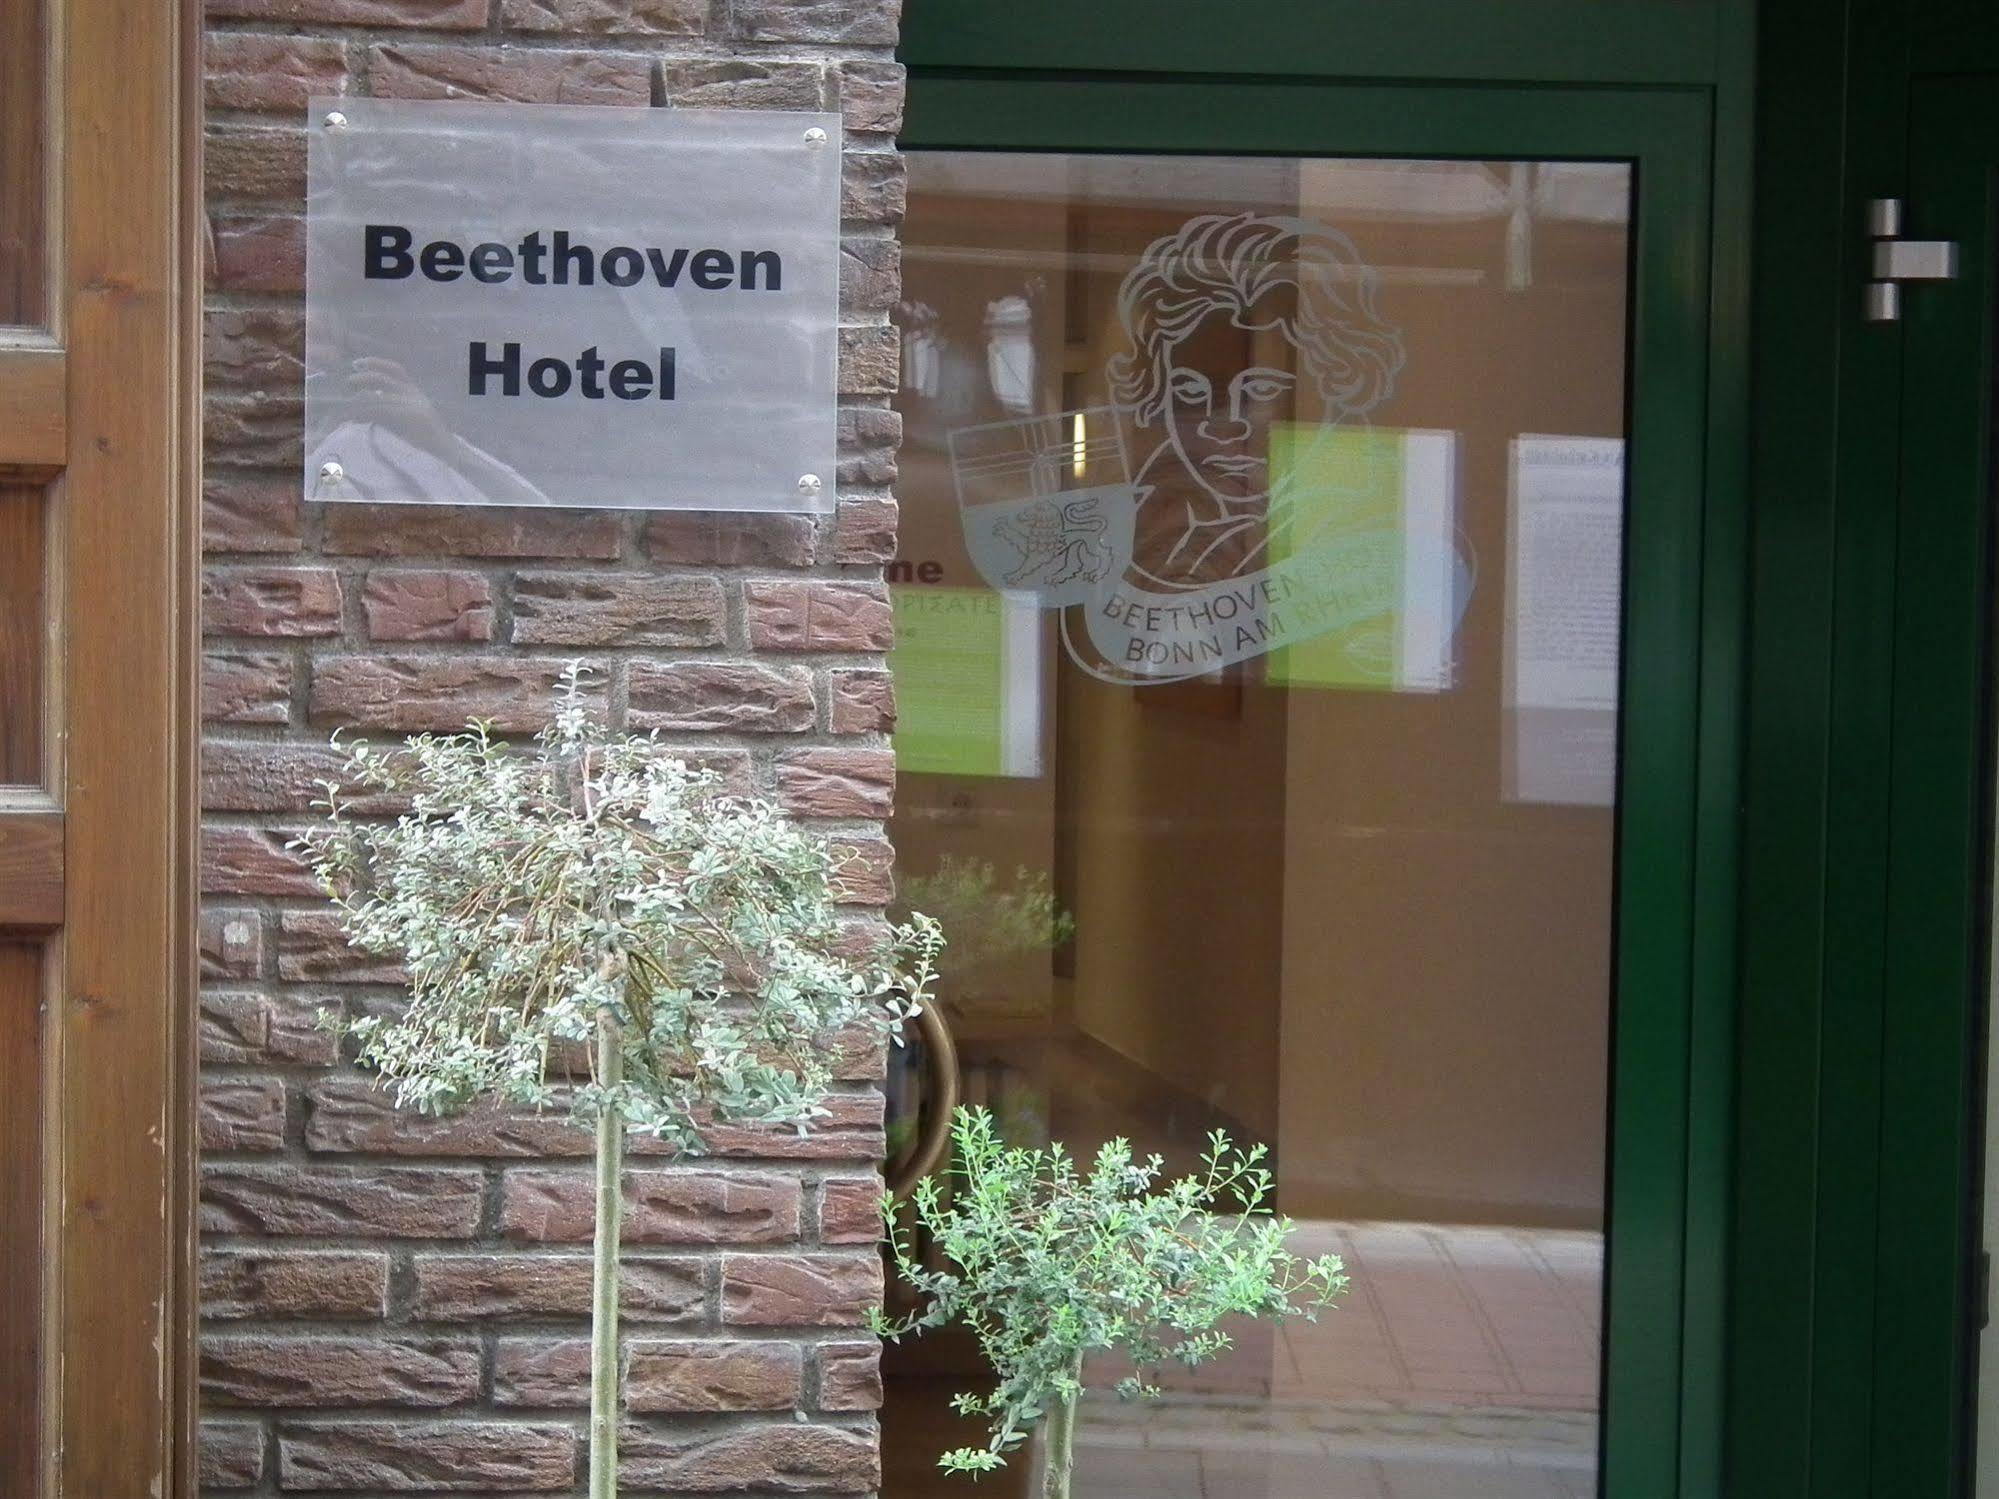 Beethoven Hotel Dreesen - Furnished By Boconcept Bonn Exterior foto